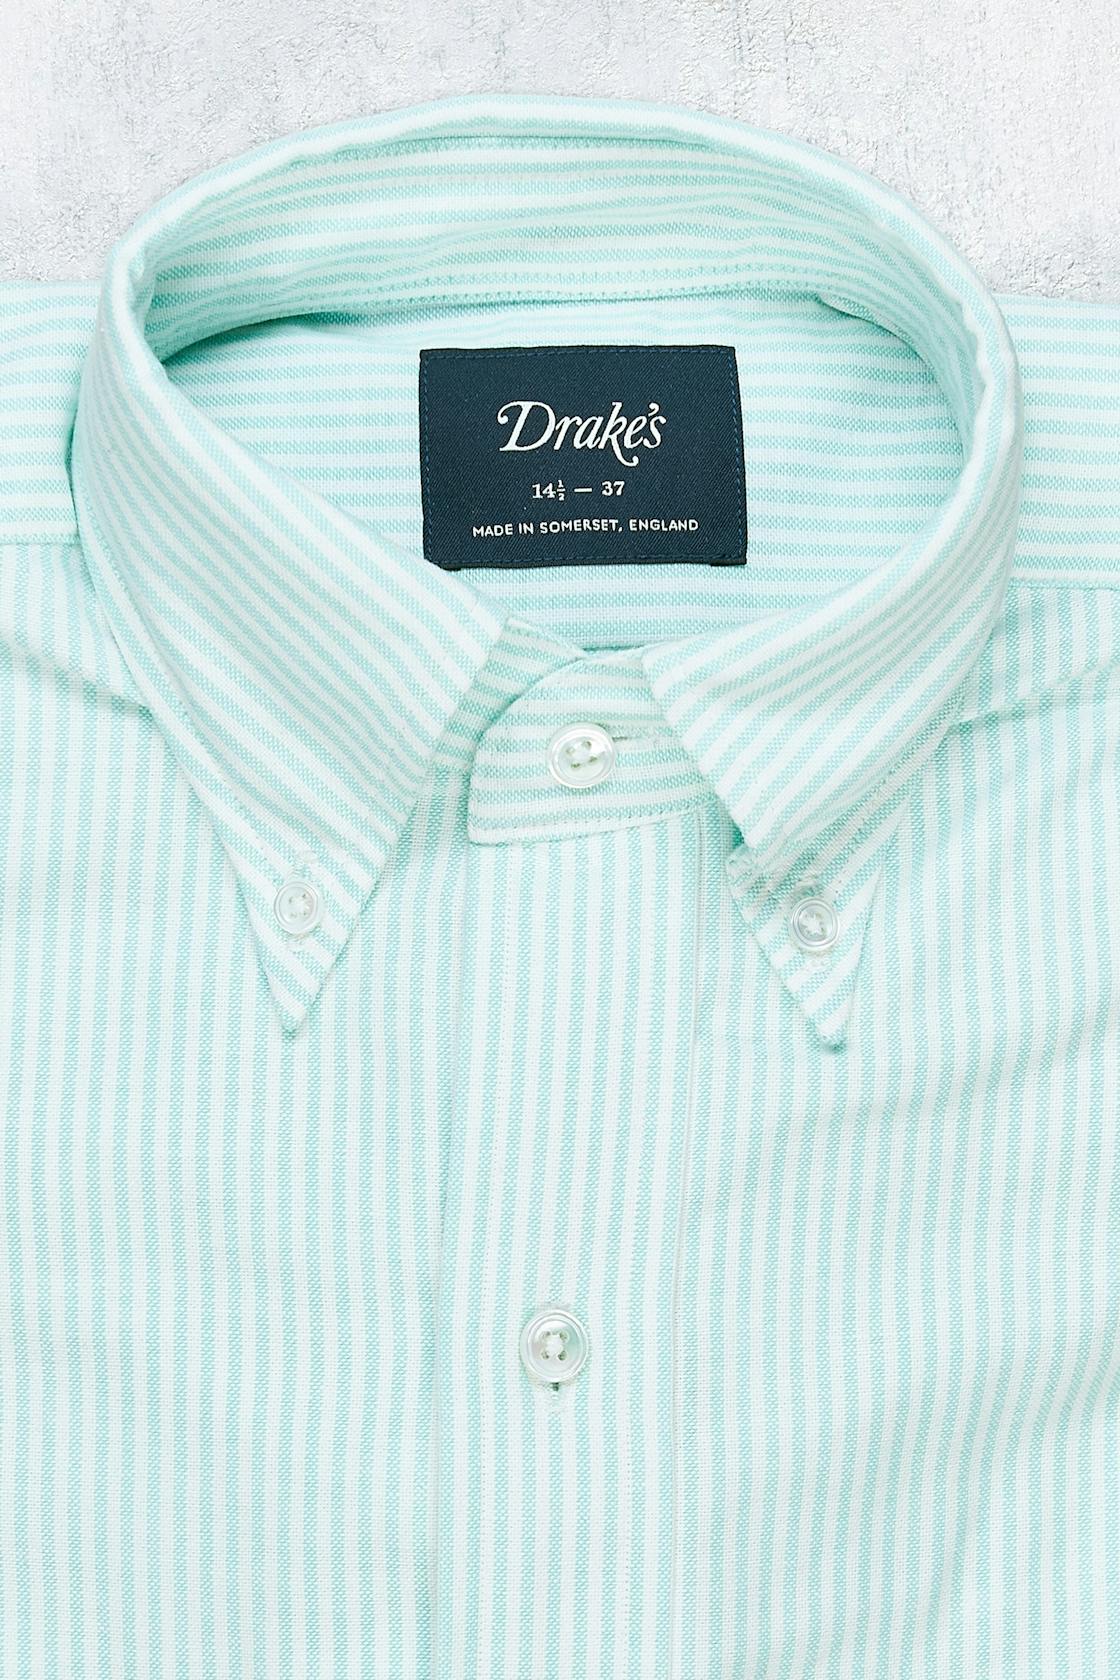 Drake's Green/White Stripe Button-down Cotton Shirt